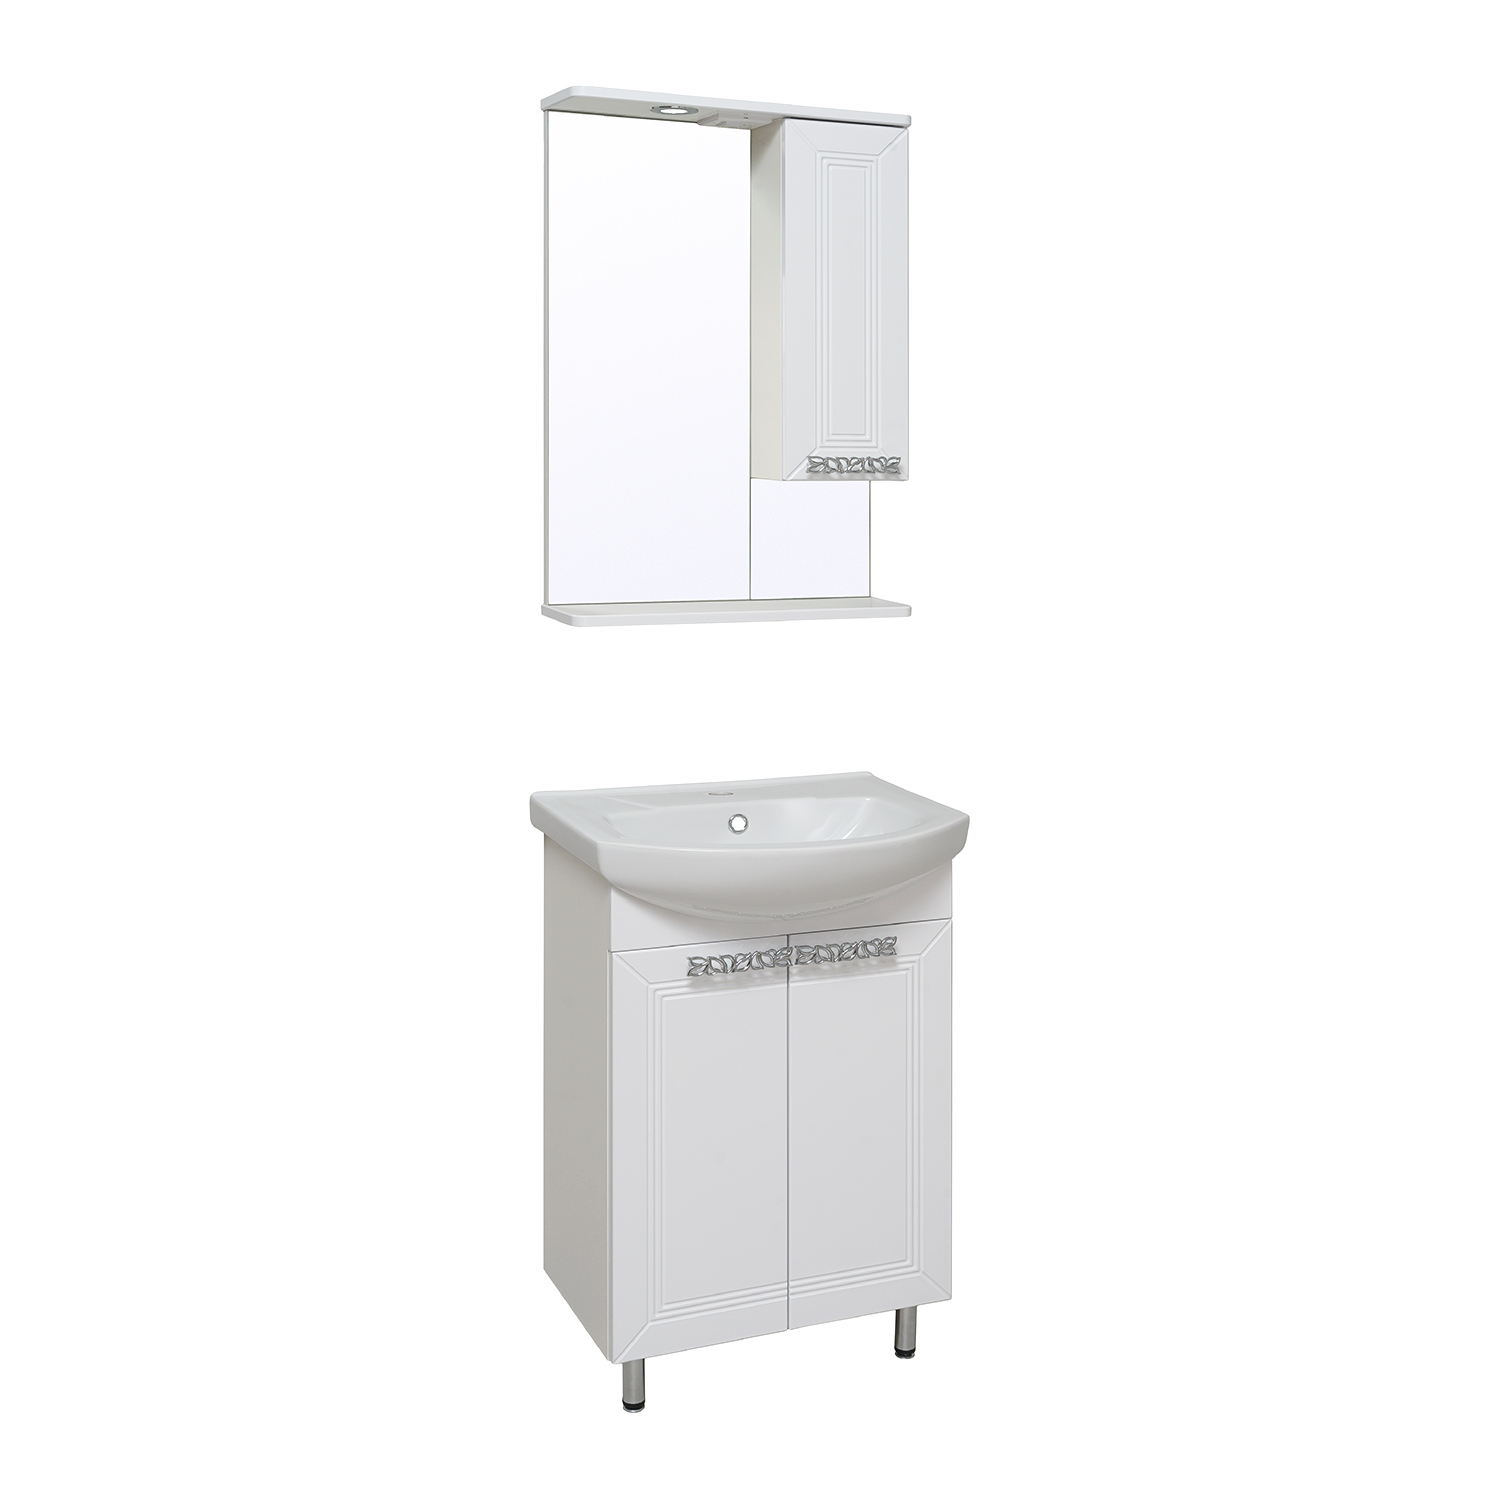 Мебель для ванной комнаты Runo Монро 55 см напольная, белая, цвет белый 00-00000457 - фото 2